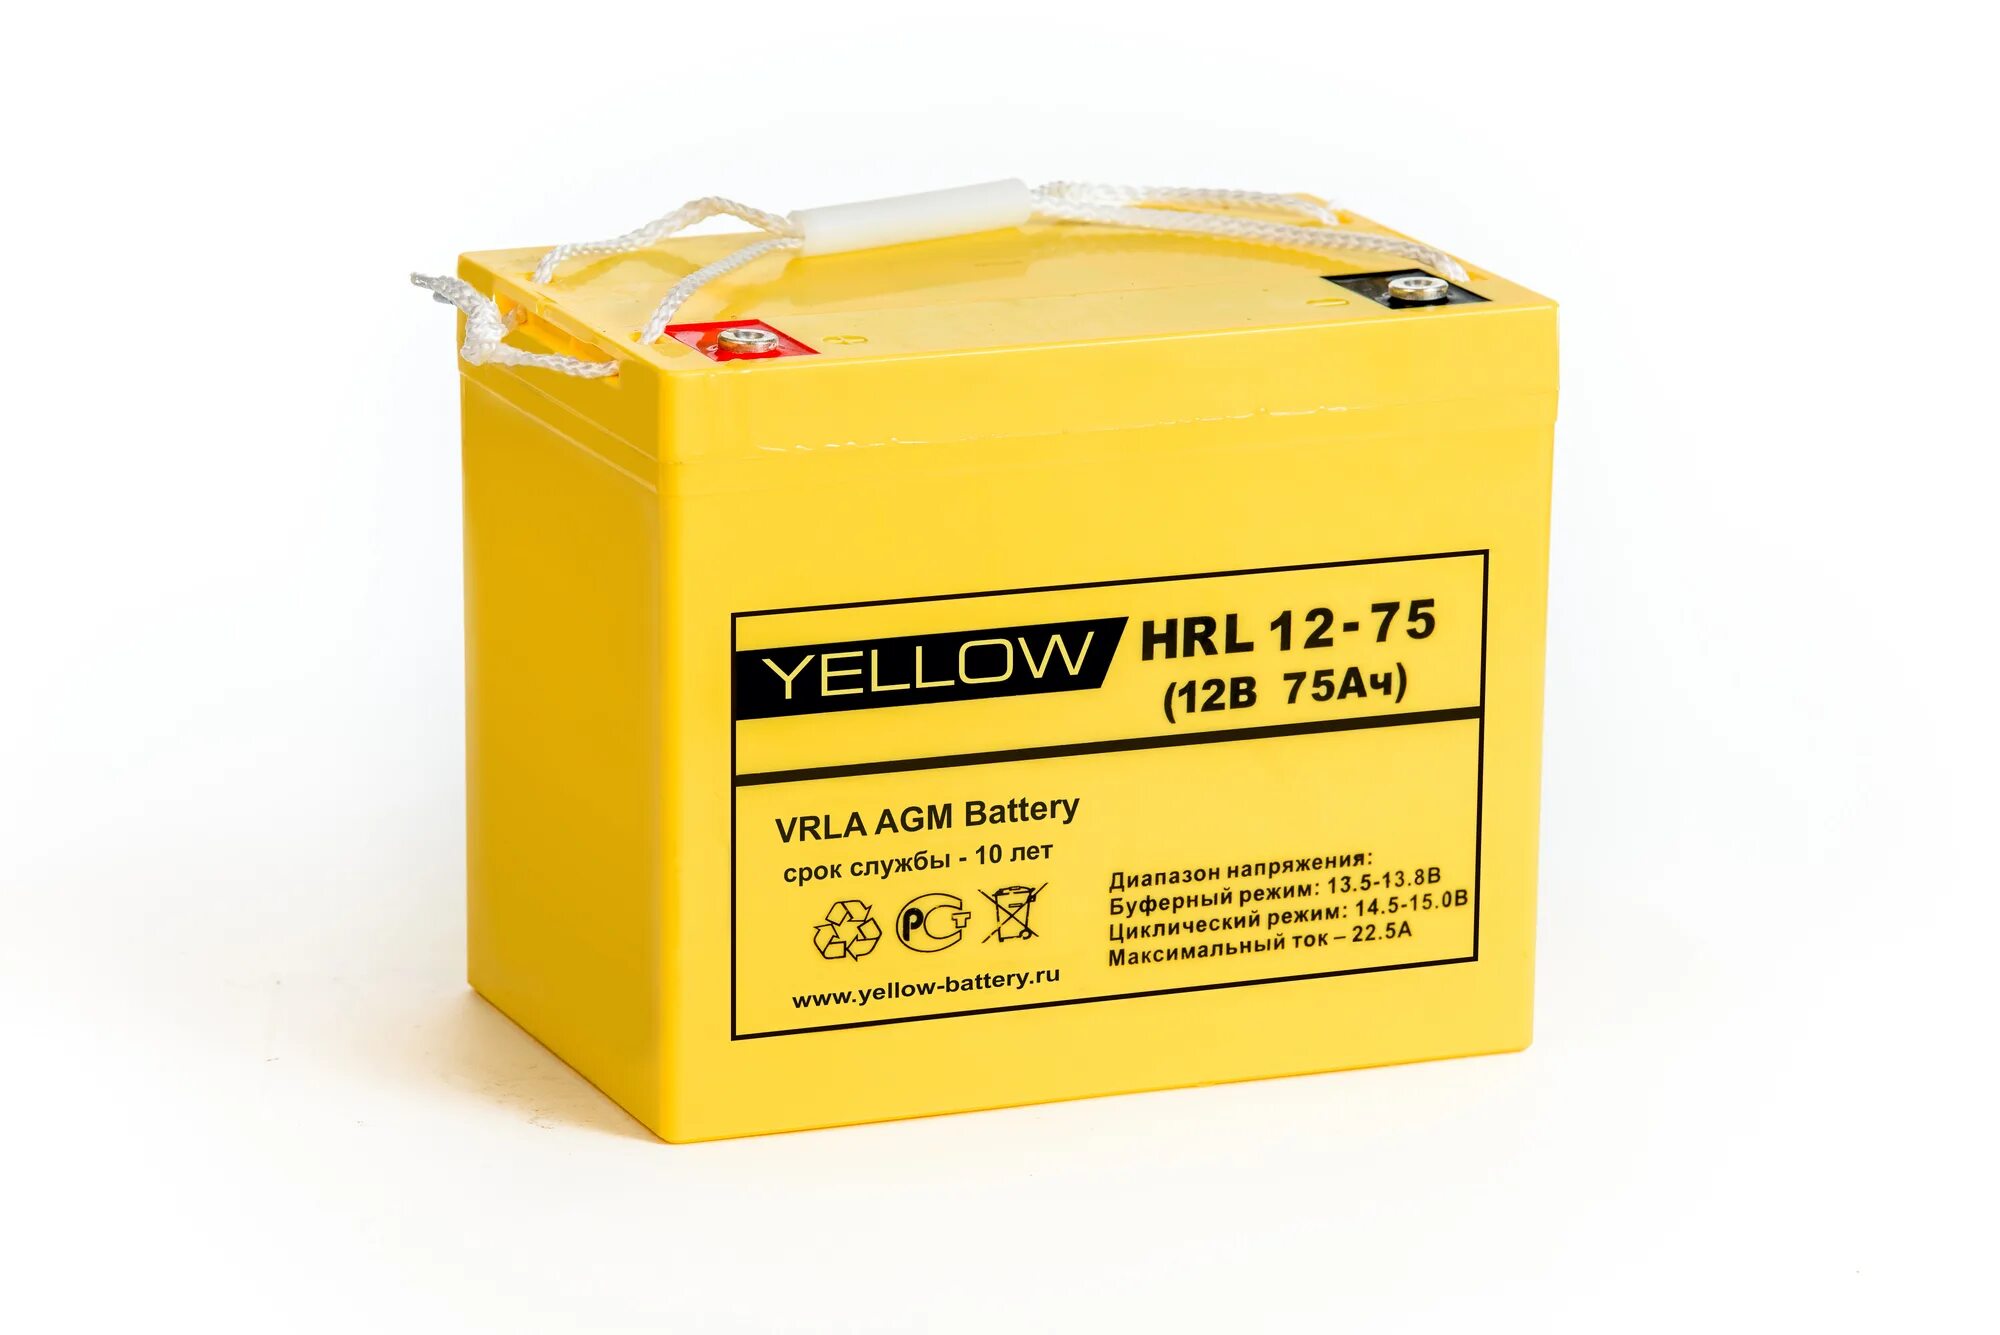 Аккумуляторная батарея Yellow HRL 12-45 45 А·Ч. АКБ Yellow HRL 12-34w. Delta Battery HRL 12-75 X 75 А·Ч. AGM VRLA аккумулятор HRL 12-75.